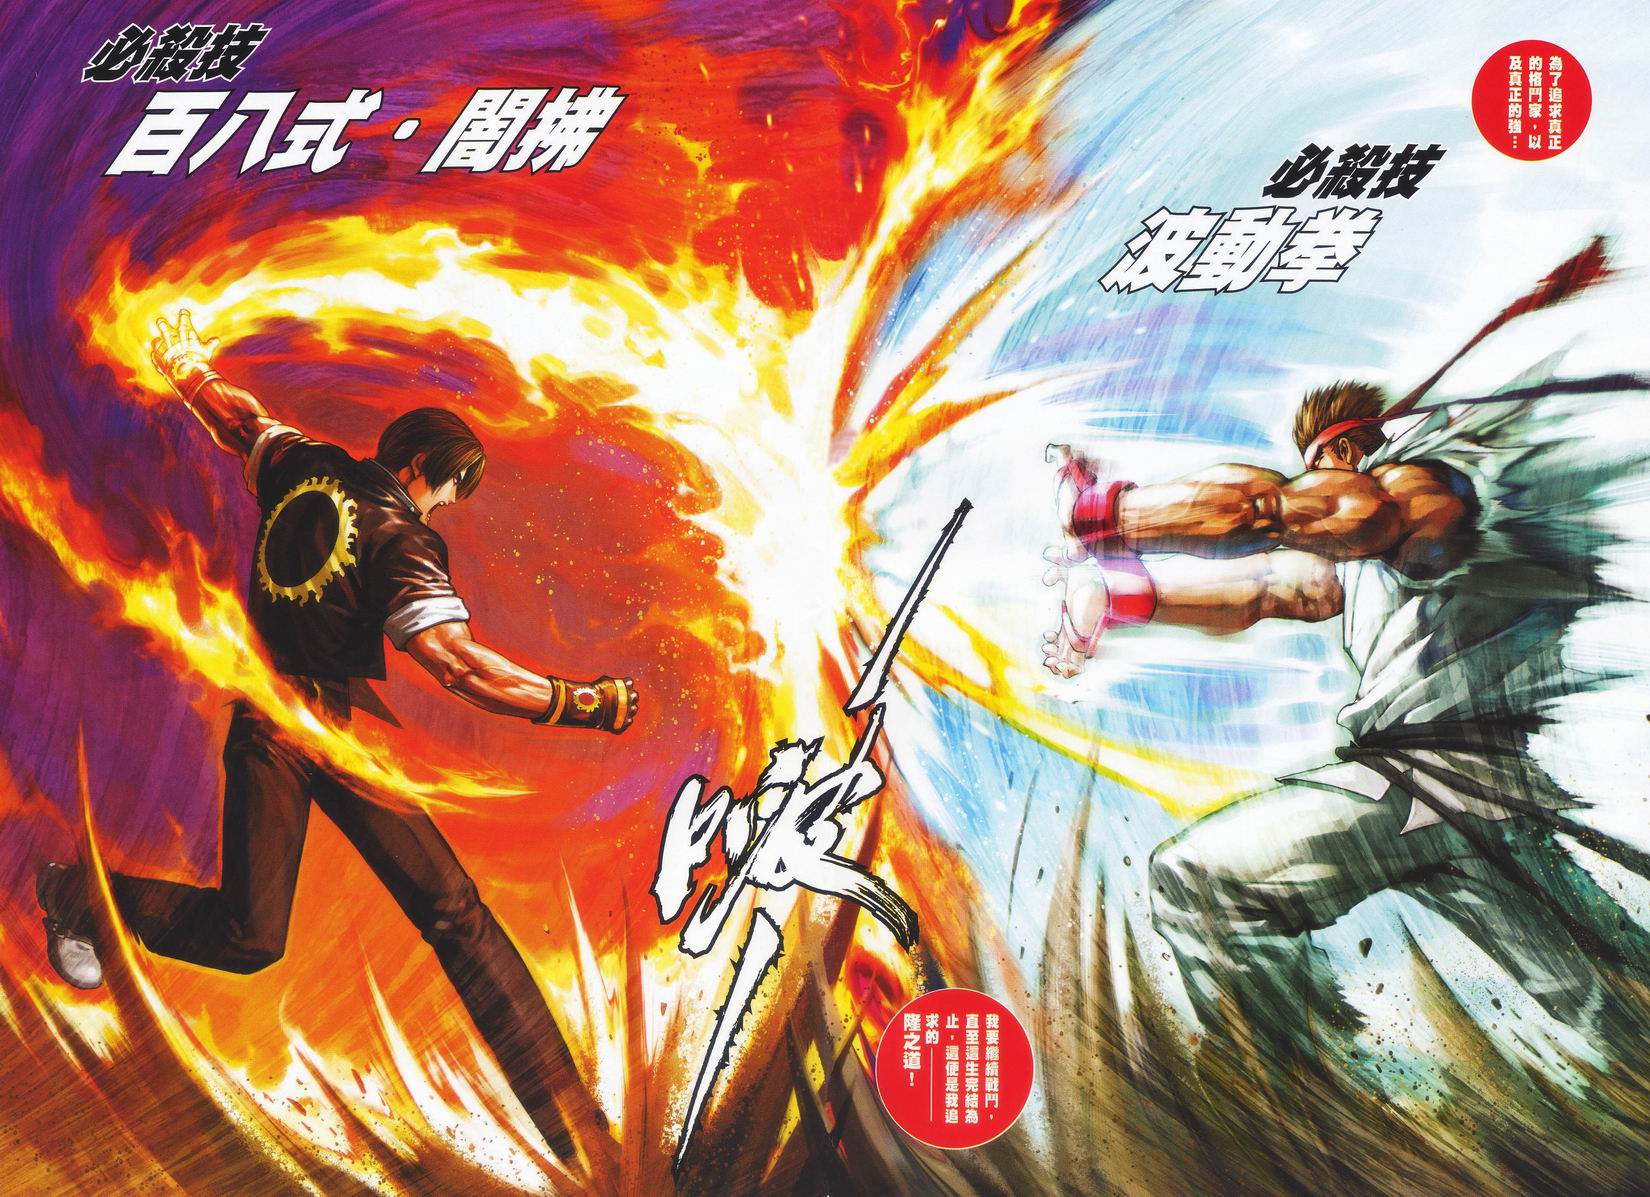 Snk Vs Capcom - Snk Vs Capcom Chaos Poster - HD Wallpaper 